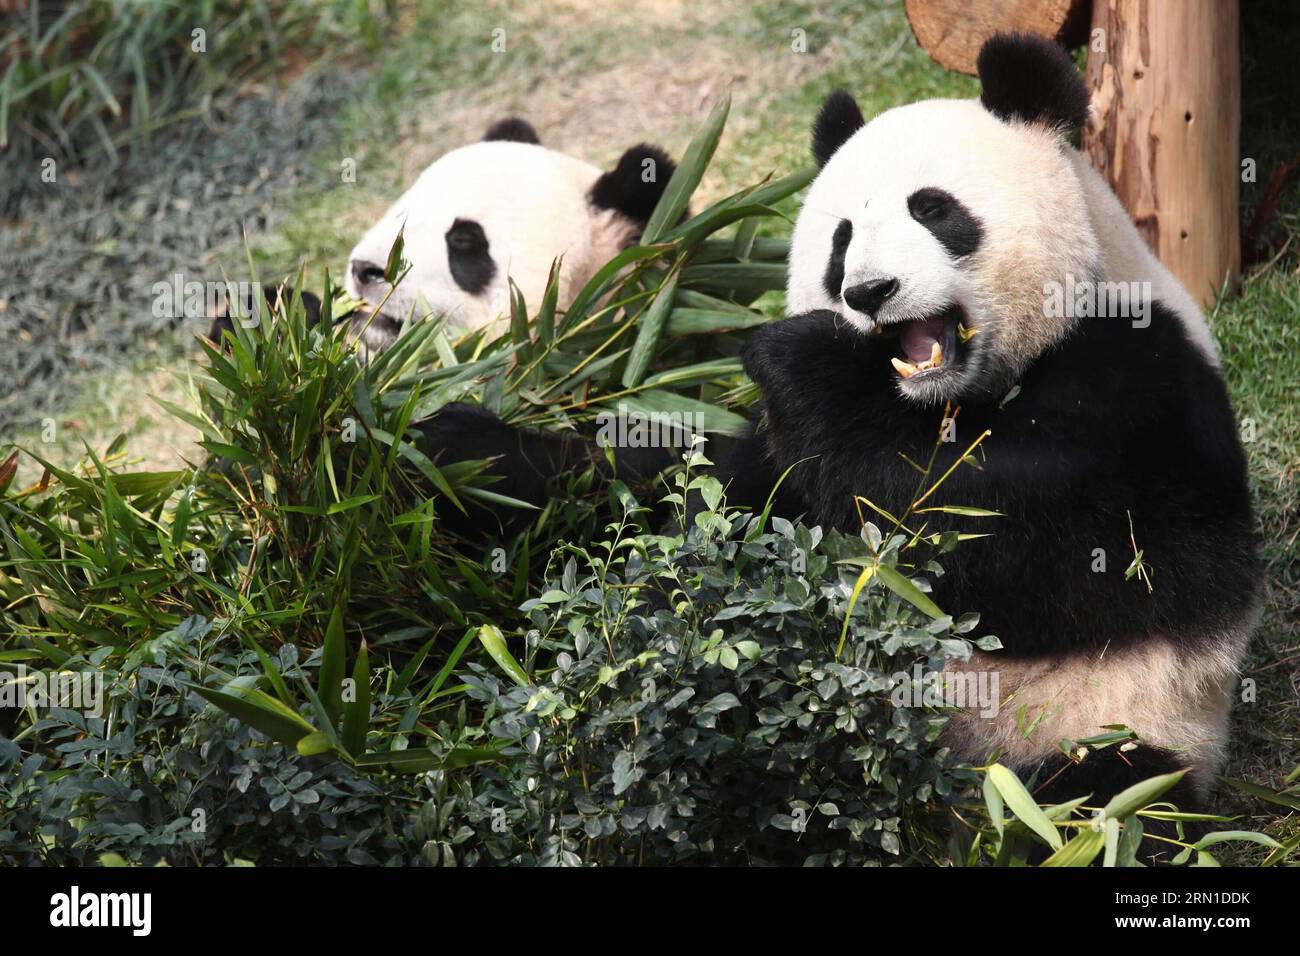 (141219) -- MACAO, 19 décembre 2014 -- dans cette photo prise le 15 décembre 2010, le panda mâle Kai Kai et sa partenaire femelle Xin Xin se nourrissent de feuilles de bambou dans le sud de la chine à Macao. Kai Kai, ainsi que Xin Xin, décédé d'une insuffisance rénale aiguë et de maladies connexes le 22 juin 2014, ont été présentés par le gouvernement central chinois à Macao en cadeau pour le 10e anniversaire de la région administrative spéciale de Macao (RAS) en 2009. Le gouvernement central chinois va conférer une autre paire de pandas géants à Macao, a déclaré vendredi le président Xi Jinping ici, lors de sa rencontre avec Chui Sai On, directeur général Banque D'Images